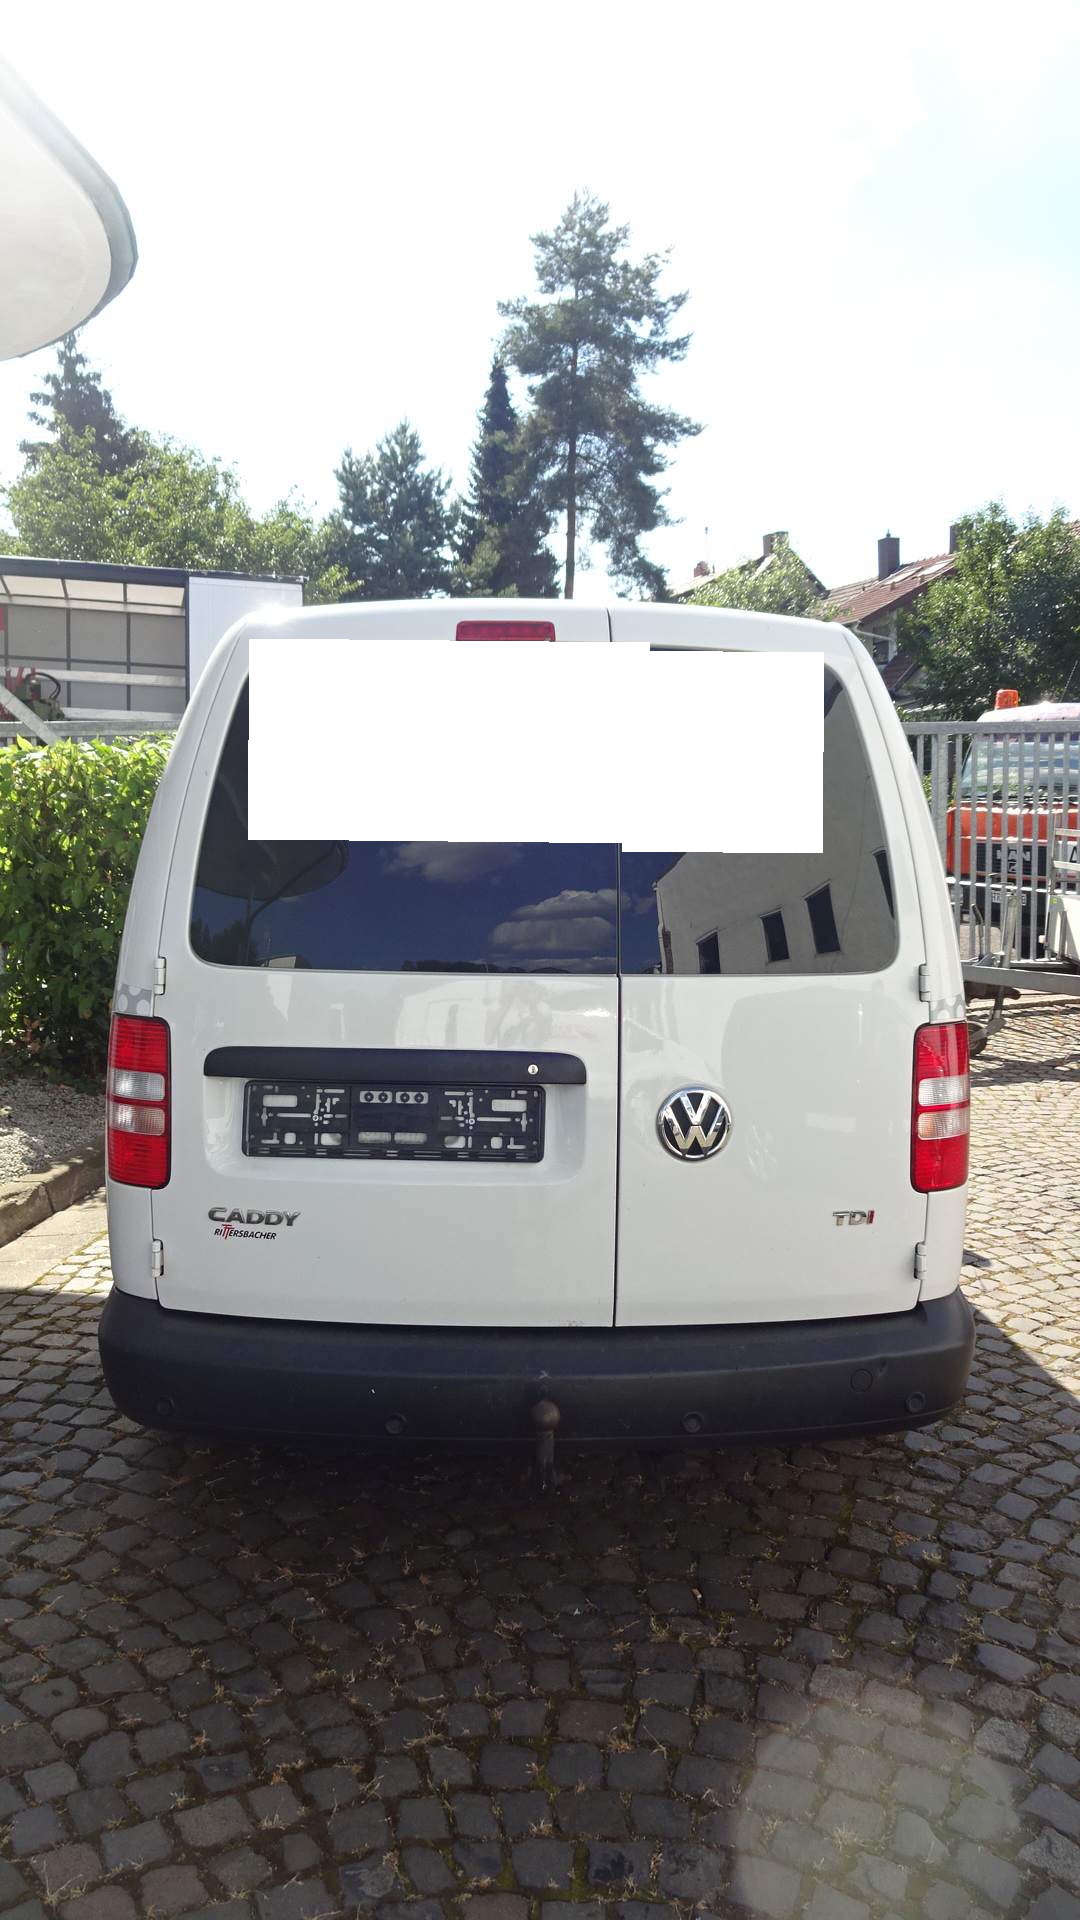 1 VW Caddy Van, mit Fahrzeugausbau Objektdetail Weis